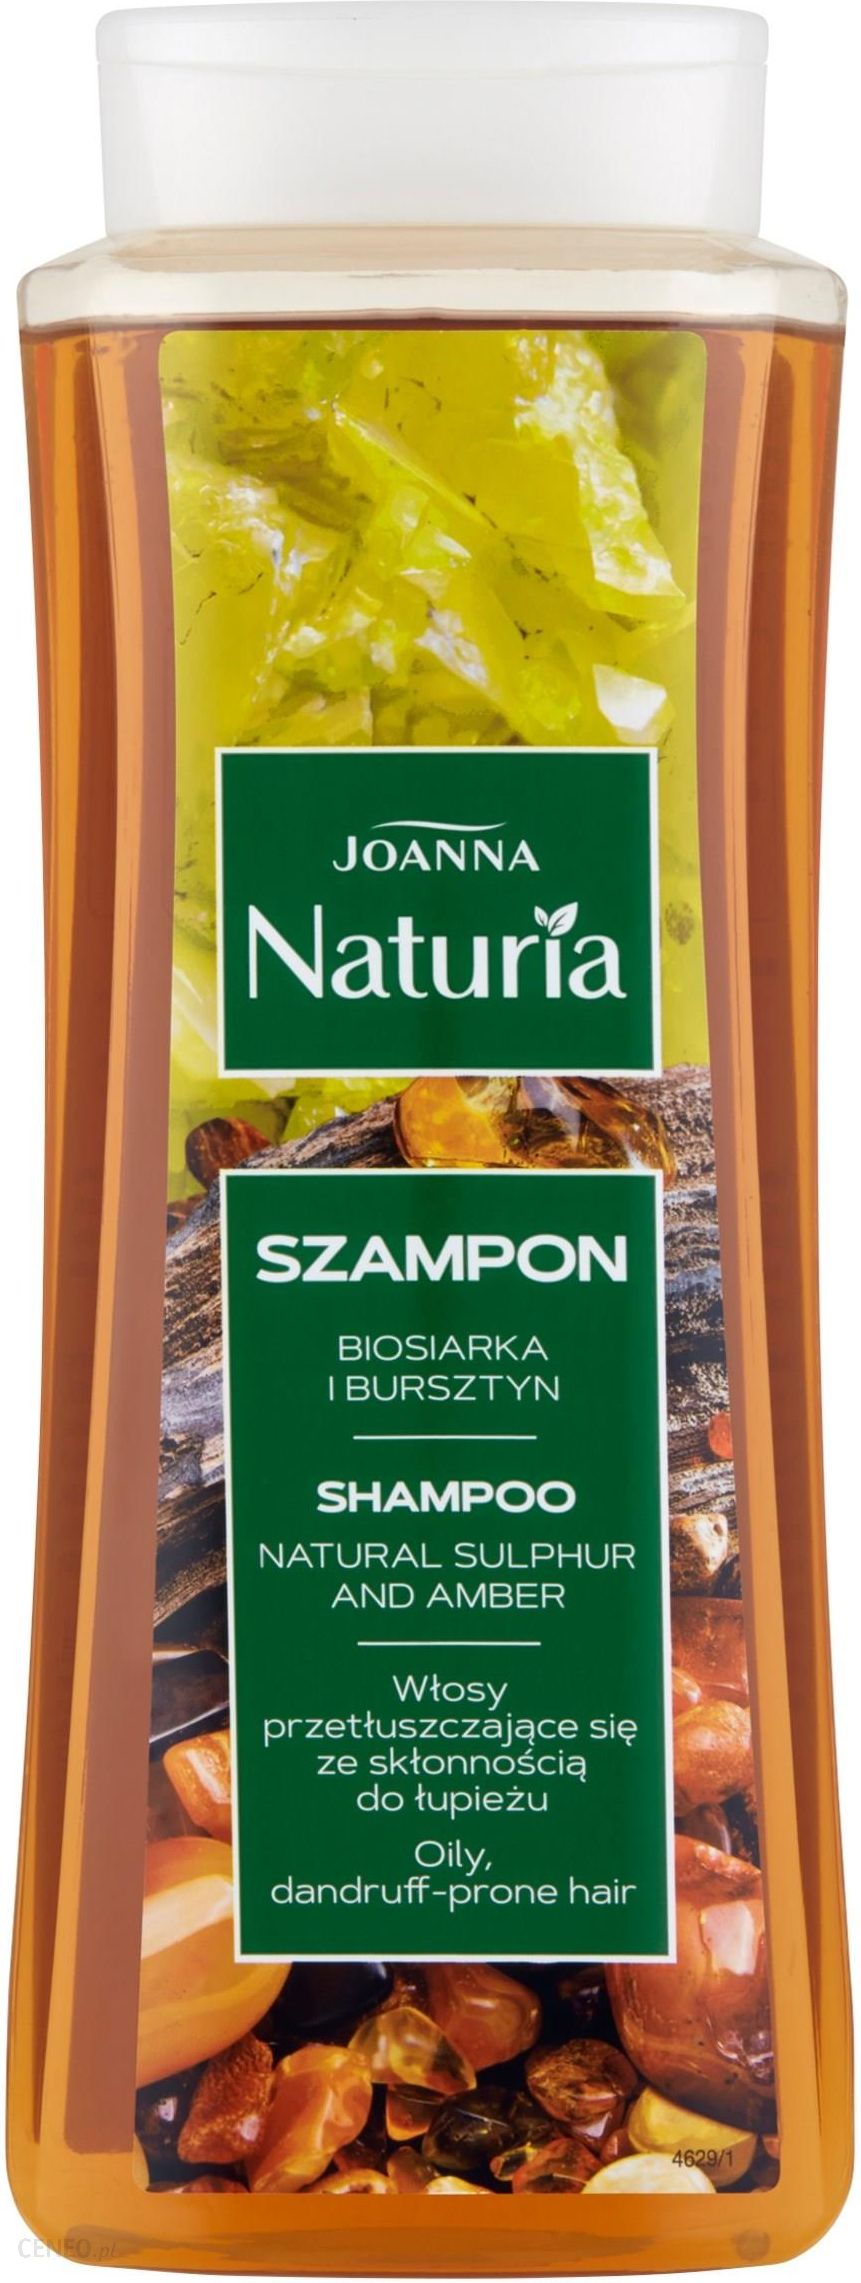 szampon z biosiarką i bursztynem firmy joanna